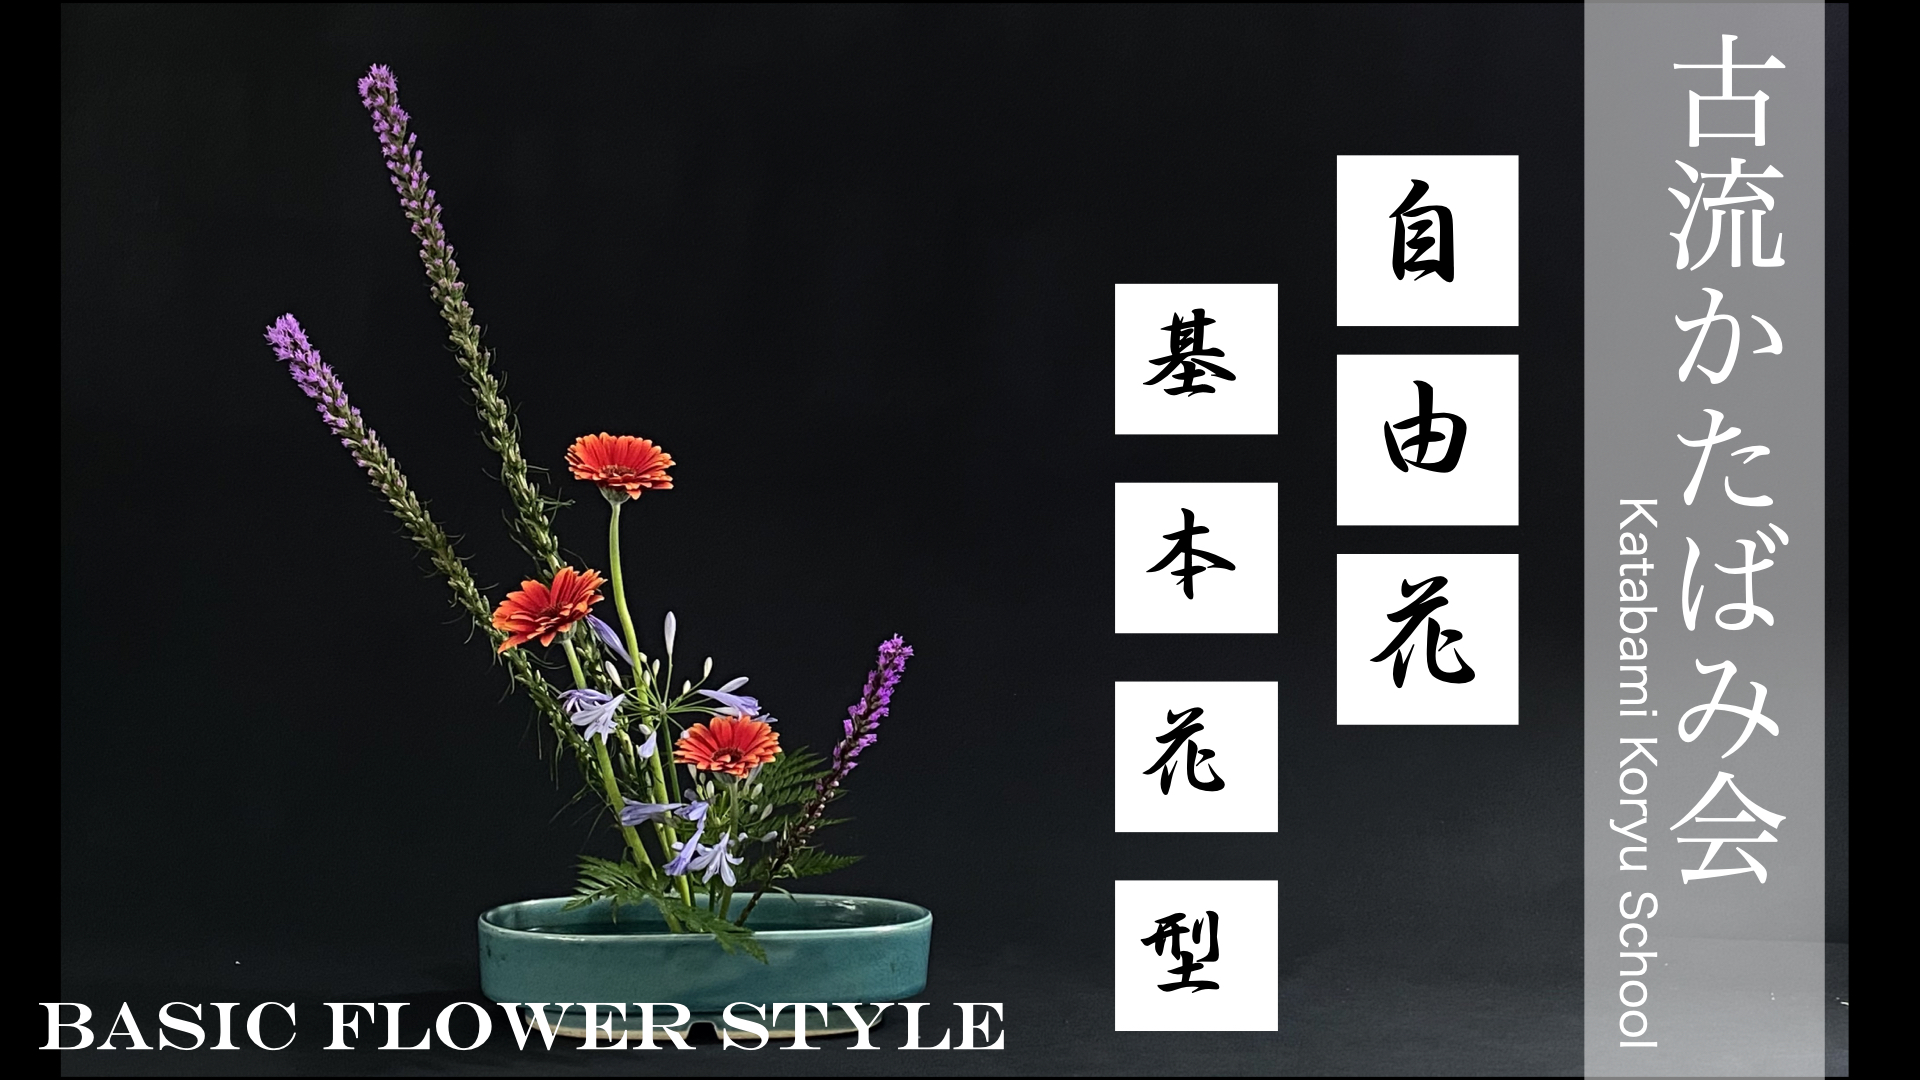 生け花 古流かたばみ会 基本花型 の生け方を解説 Ikebana 生け花 古流かたばみ会